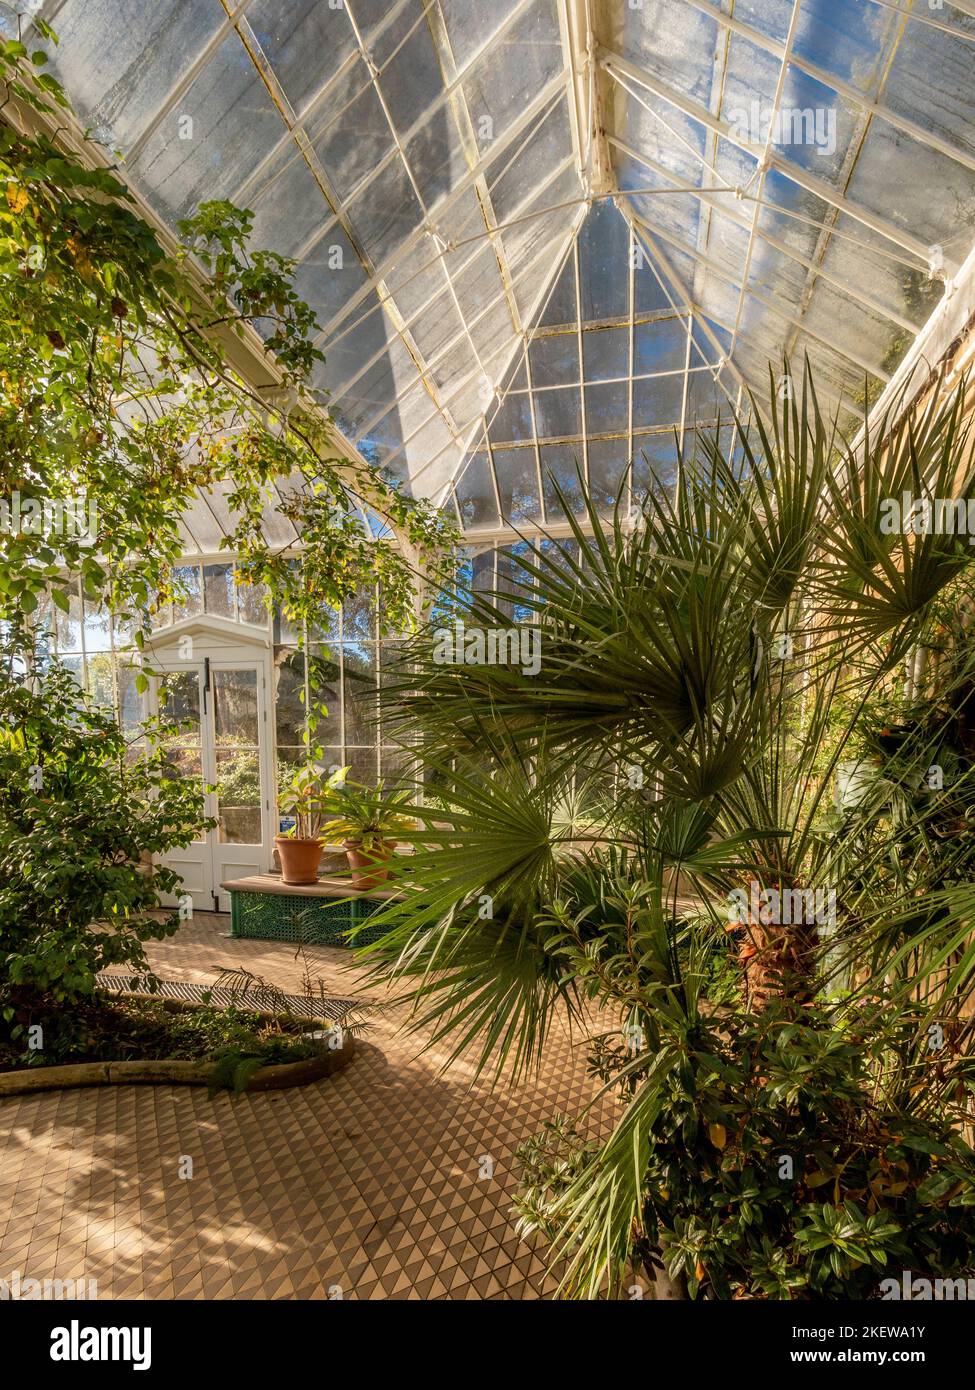 Les plantes poussent dans le conservatoire victorien restauré des jardins du château de Wentworth, avec ses carreaux de céramique géométrique. ROYAUME-UNI. Banque D'Images